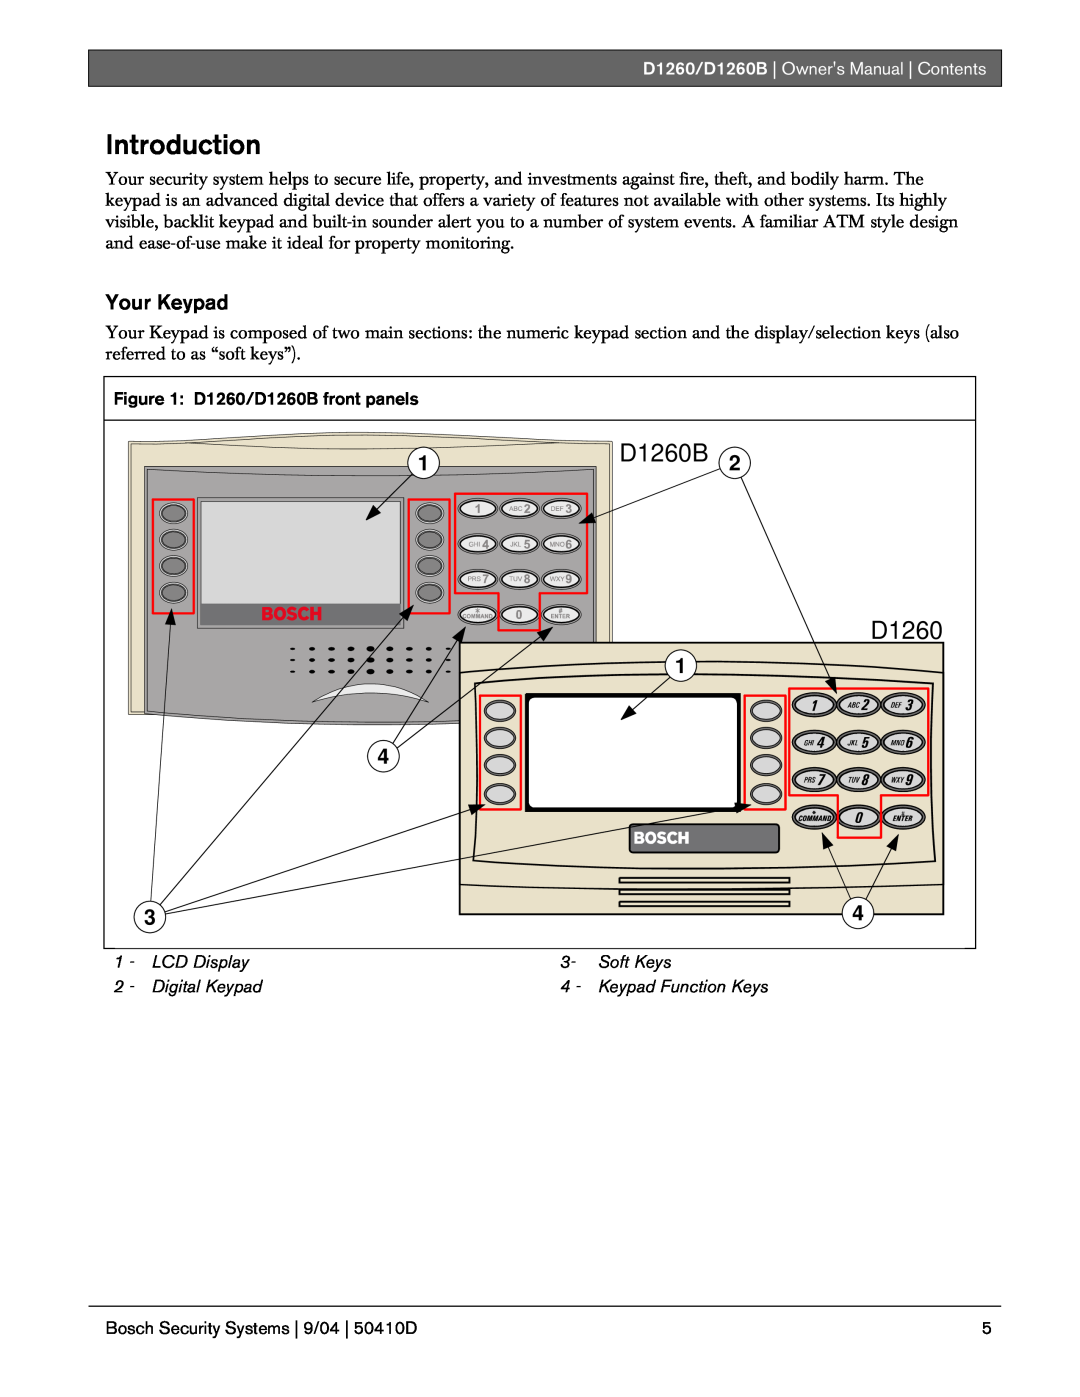 Bosch Appliances Introduction, Your Keypad, D1260/D1260B | Owners Manual | Contents, D1260/D1260B front panels 